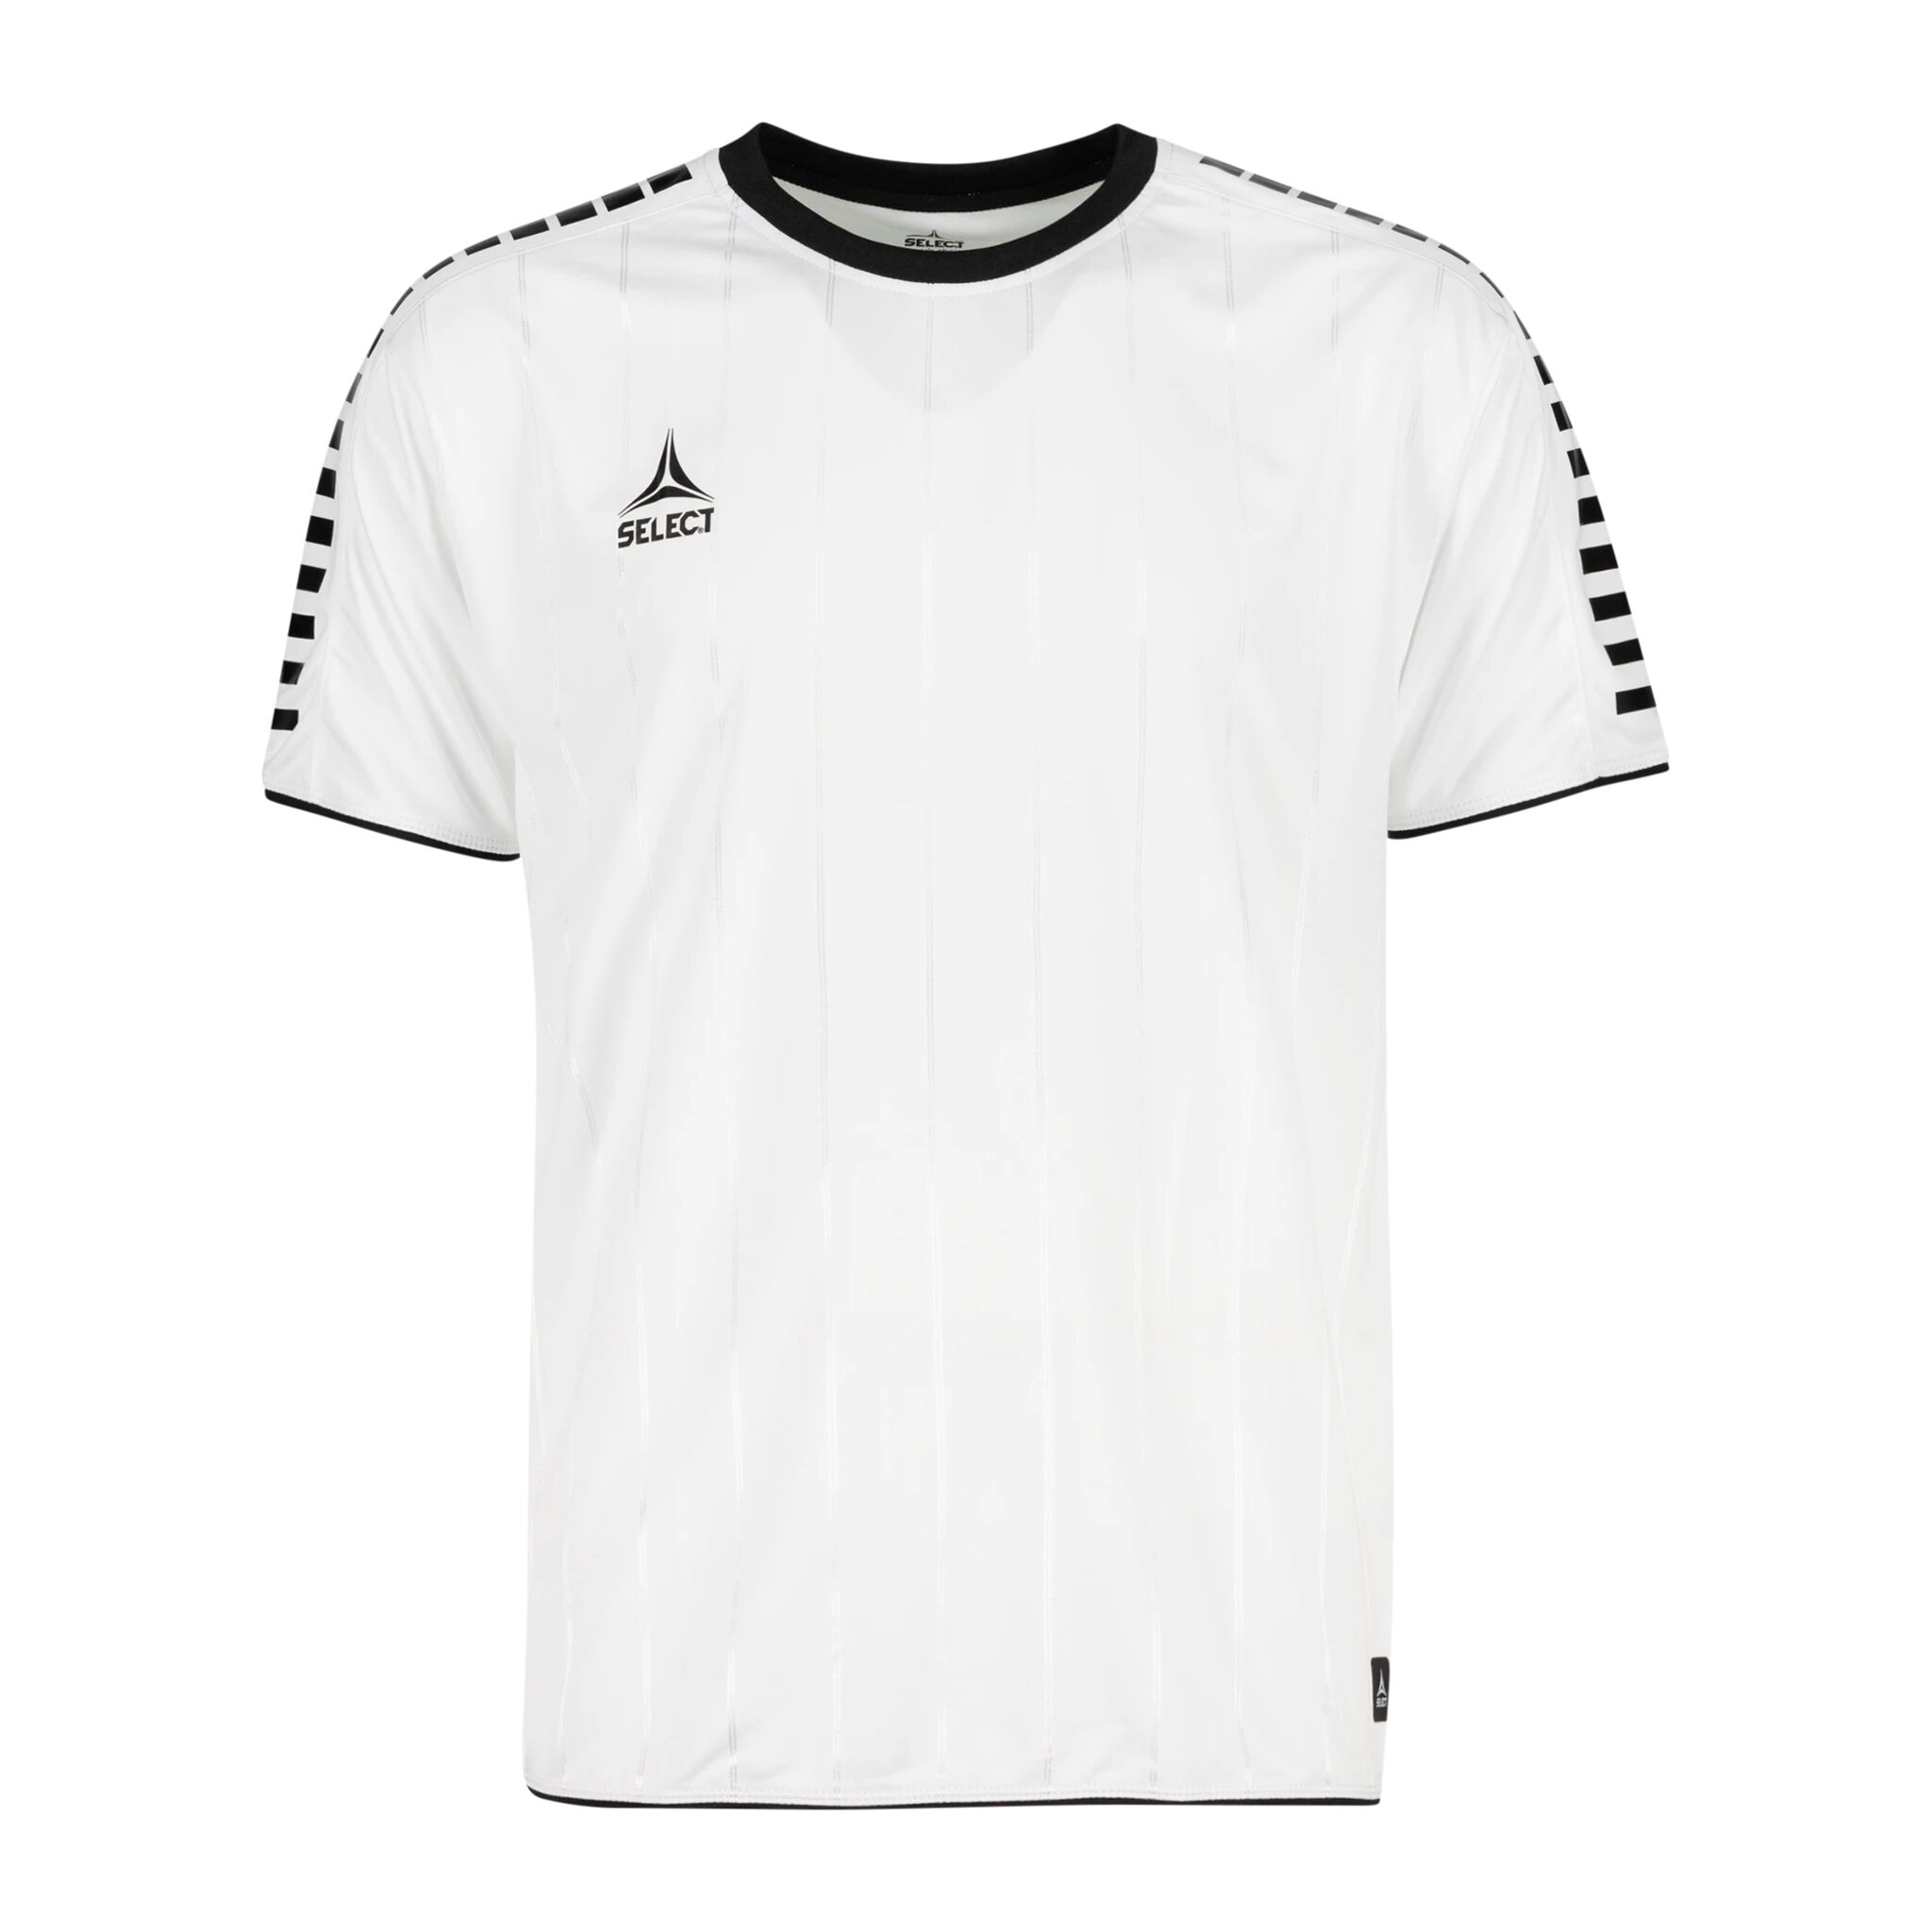 Select Player shirt S/S Argentina, fotballtrøye senior L WHITE/BLACK